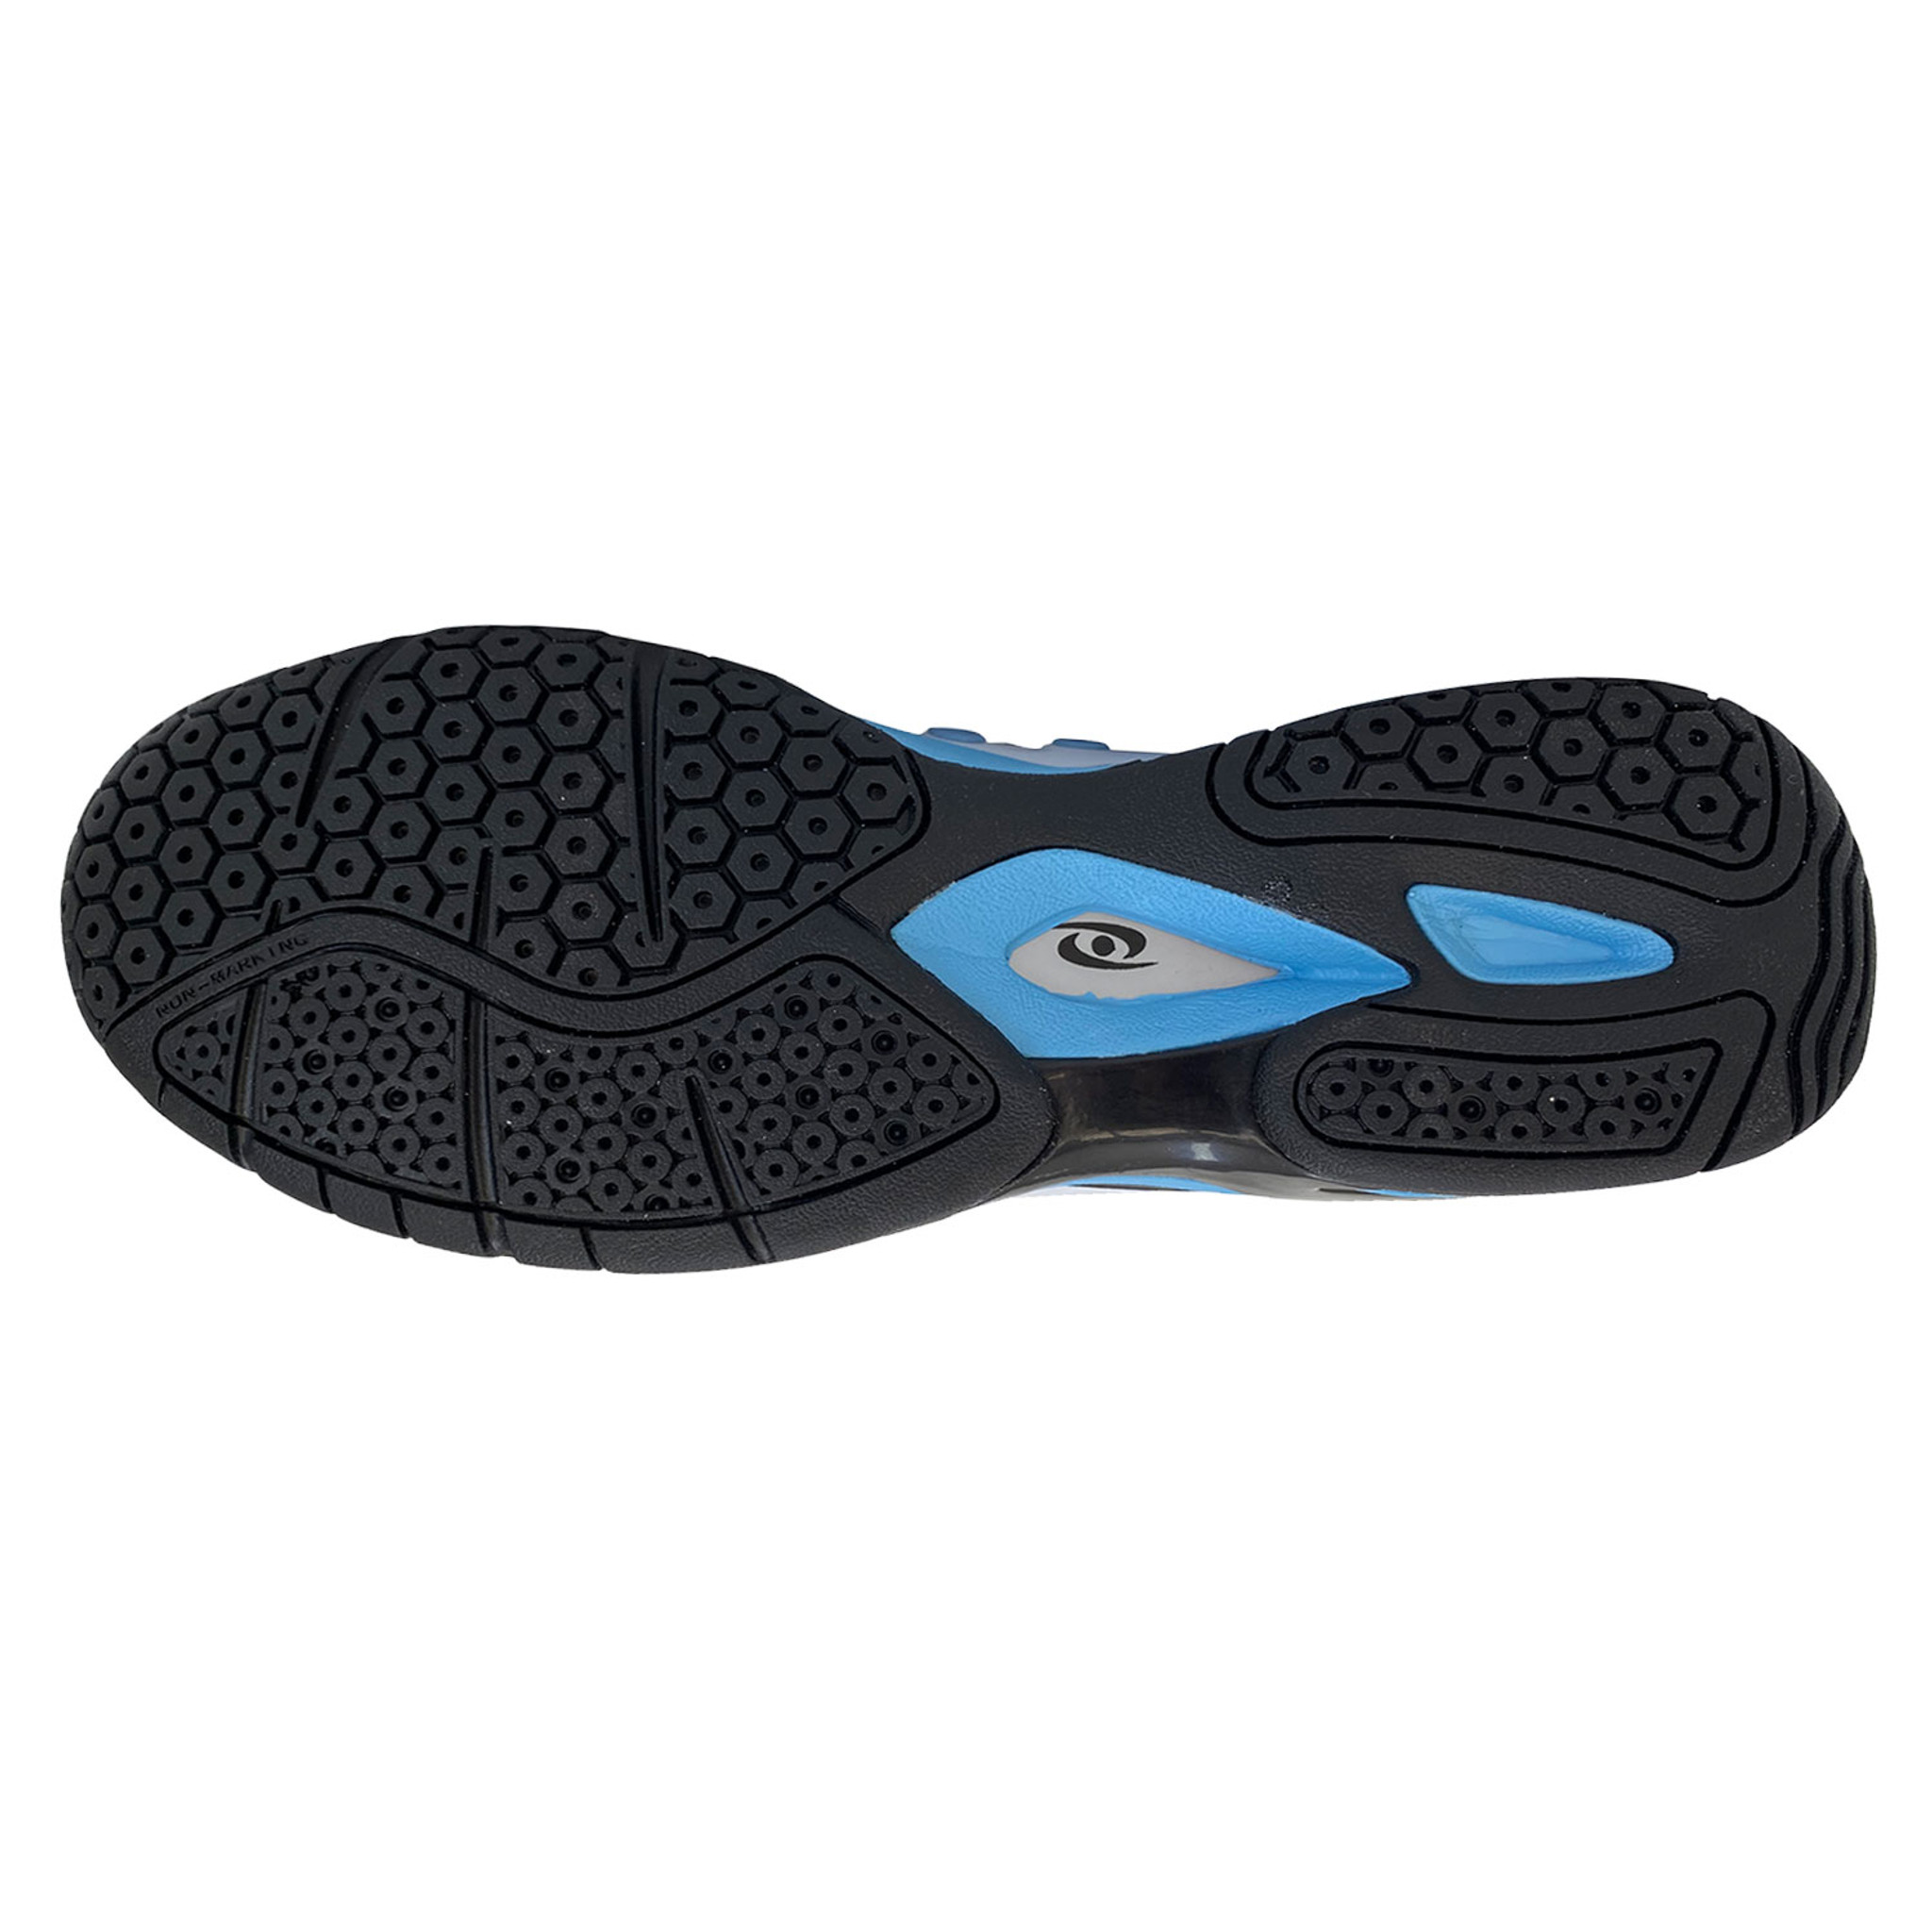 Acacia Pickleball Shoes CC Edition - Sky (Corrine) - Daily Deals - Save ...